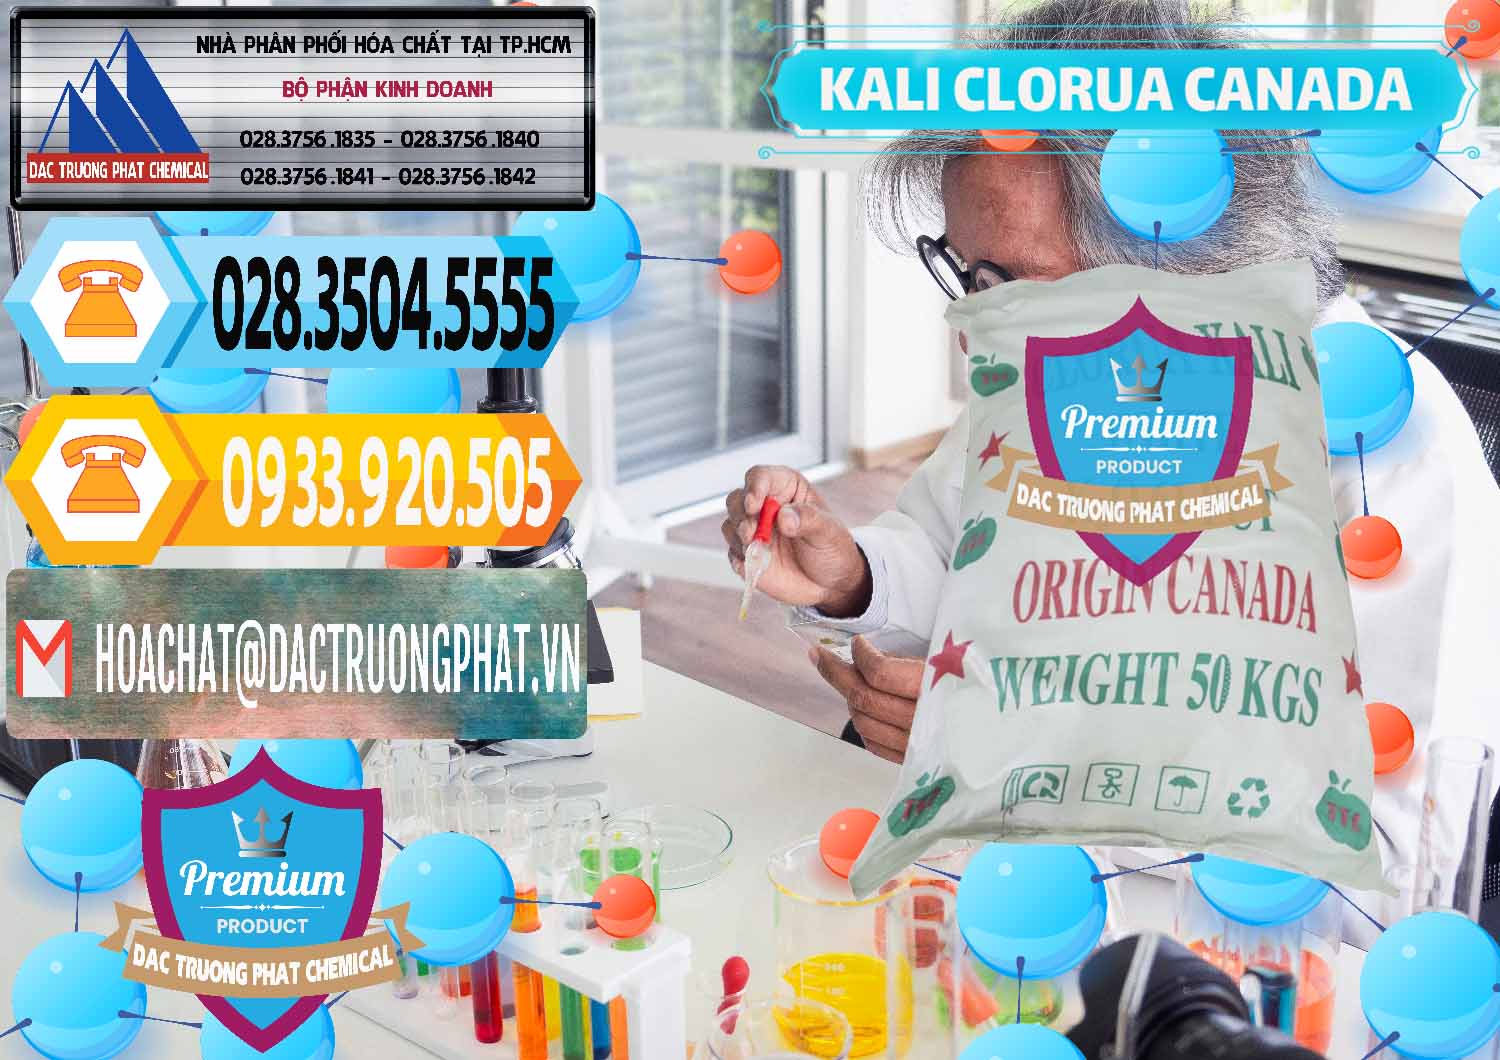 Nơi phân phối & bán KCL – Kali Clorua Trắng Canada - 0437 - Đơn vị cung cấp ( nhập khẩu ) hóa chất tại TP.HCM - hoachattayrua.net